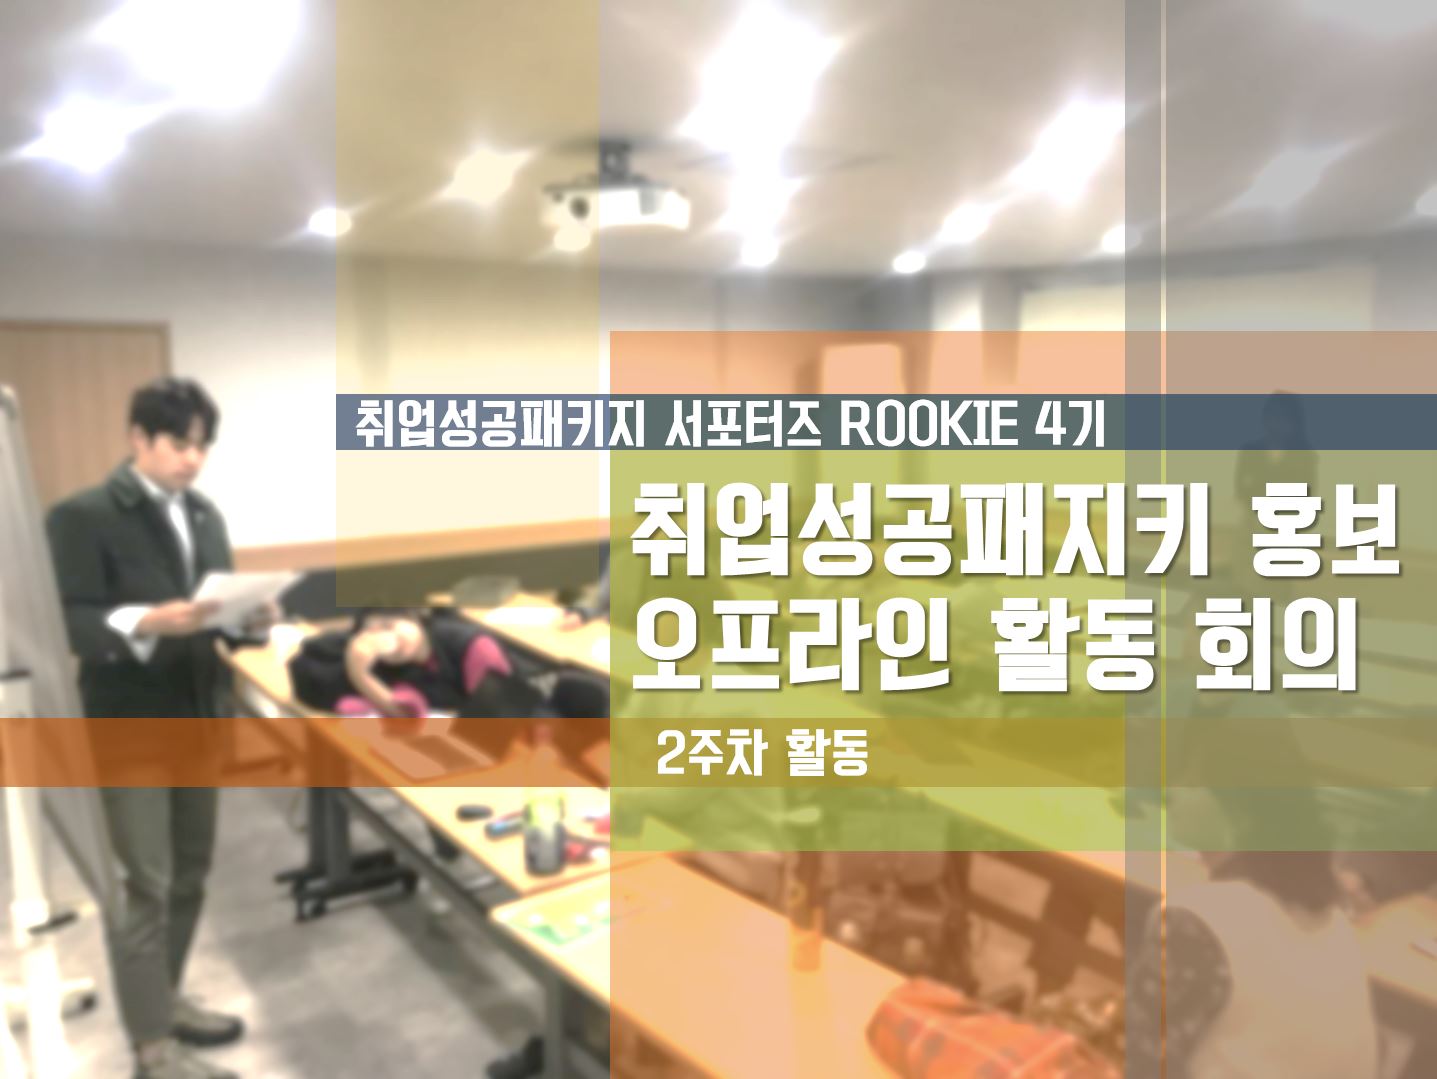 [ROOKIE 4기] - 2주차 취업성공패키지 홍보 오프라인 활동 회의